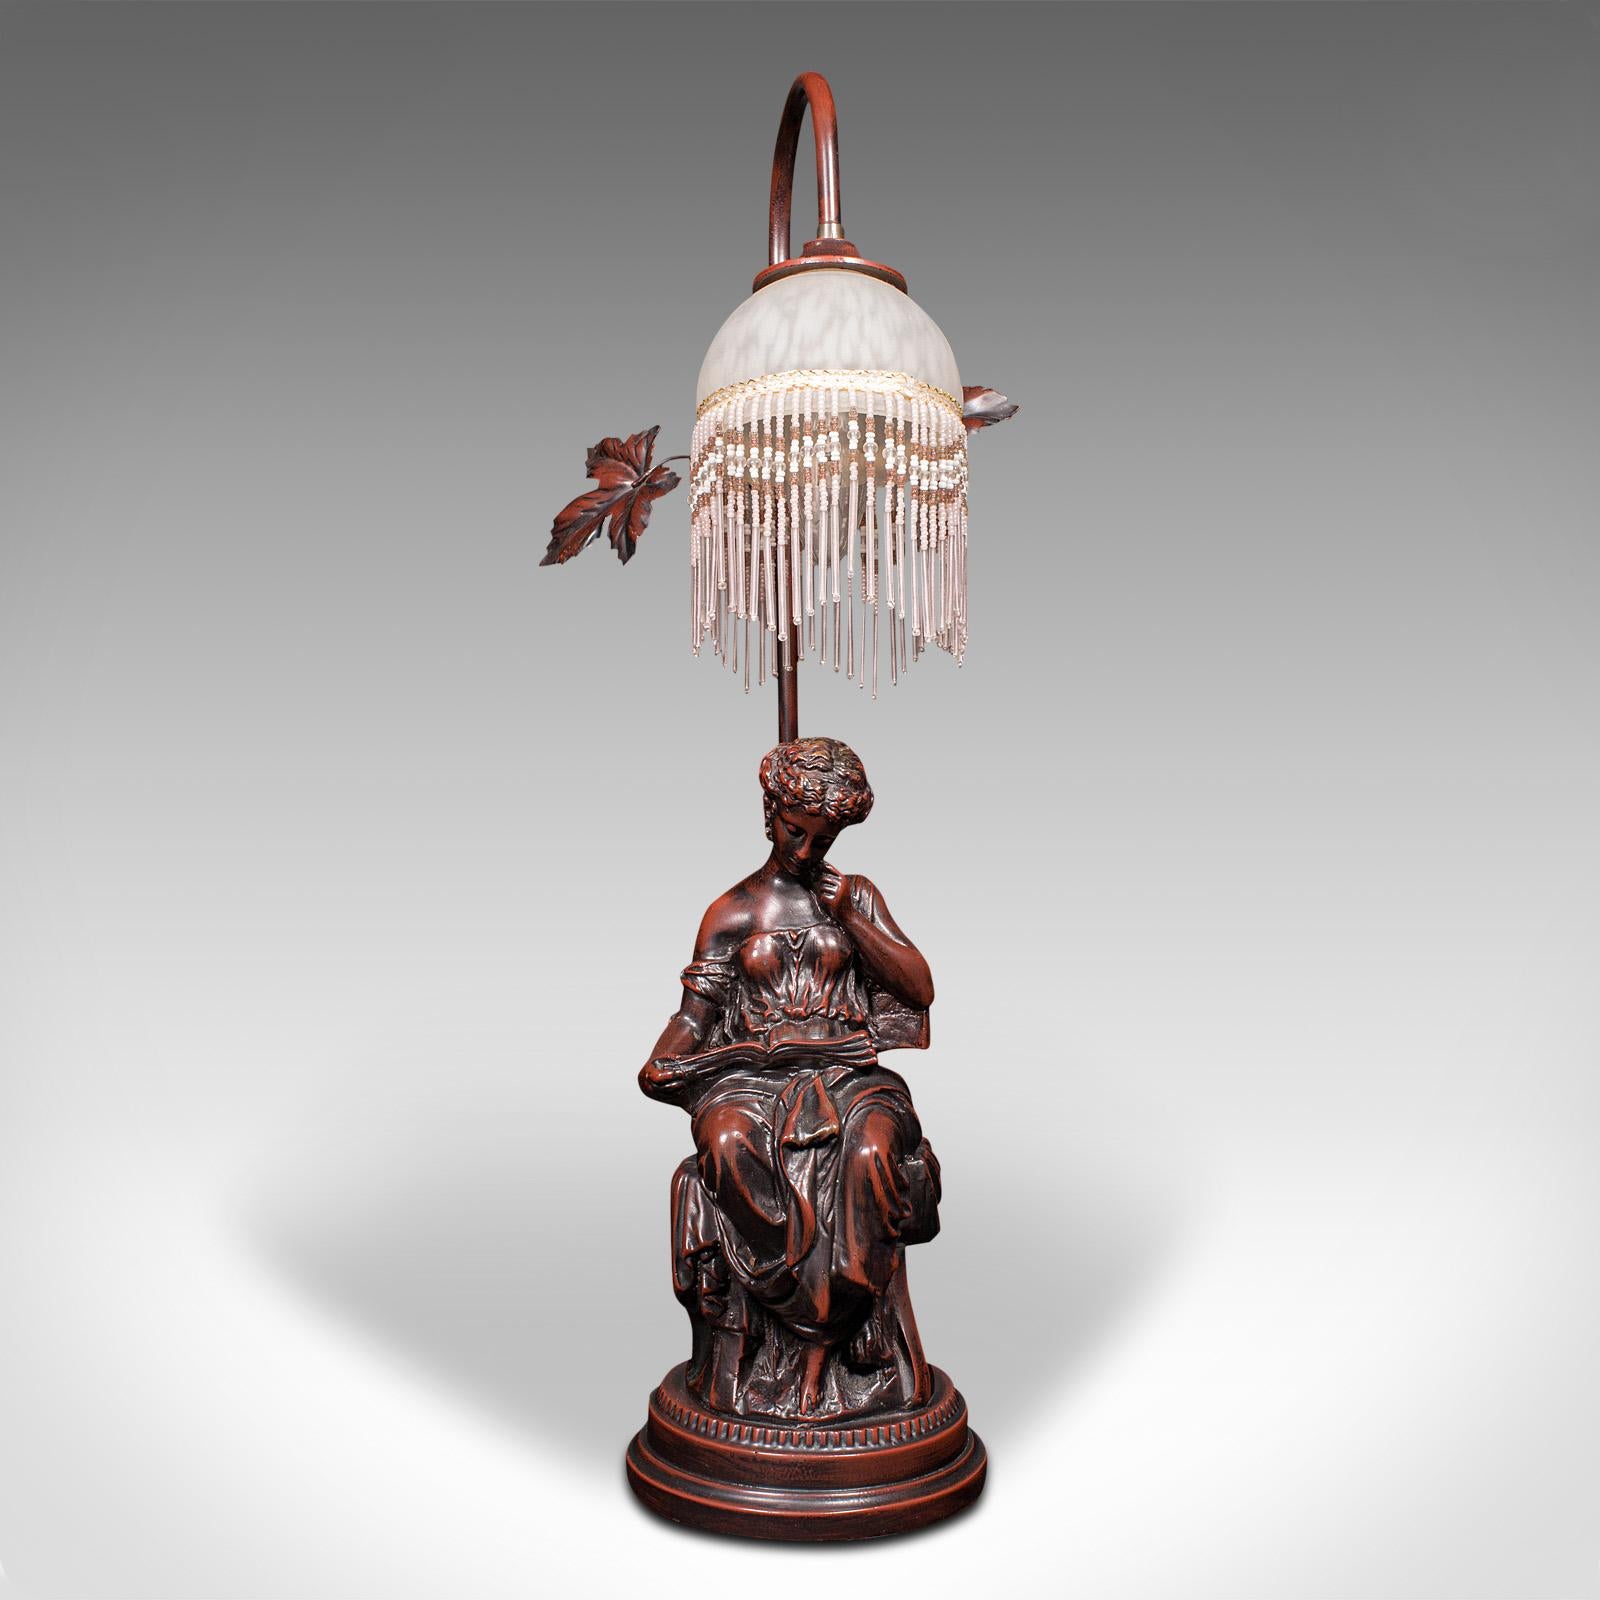 British Vintage Decorative Lamp, French, Bronzed, Figural Light, Art Nouveau Revival For Sale